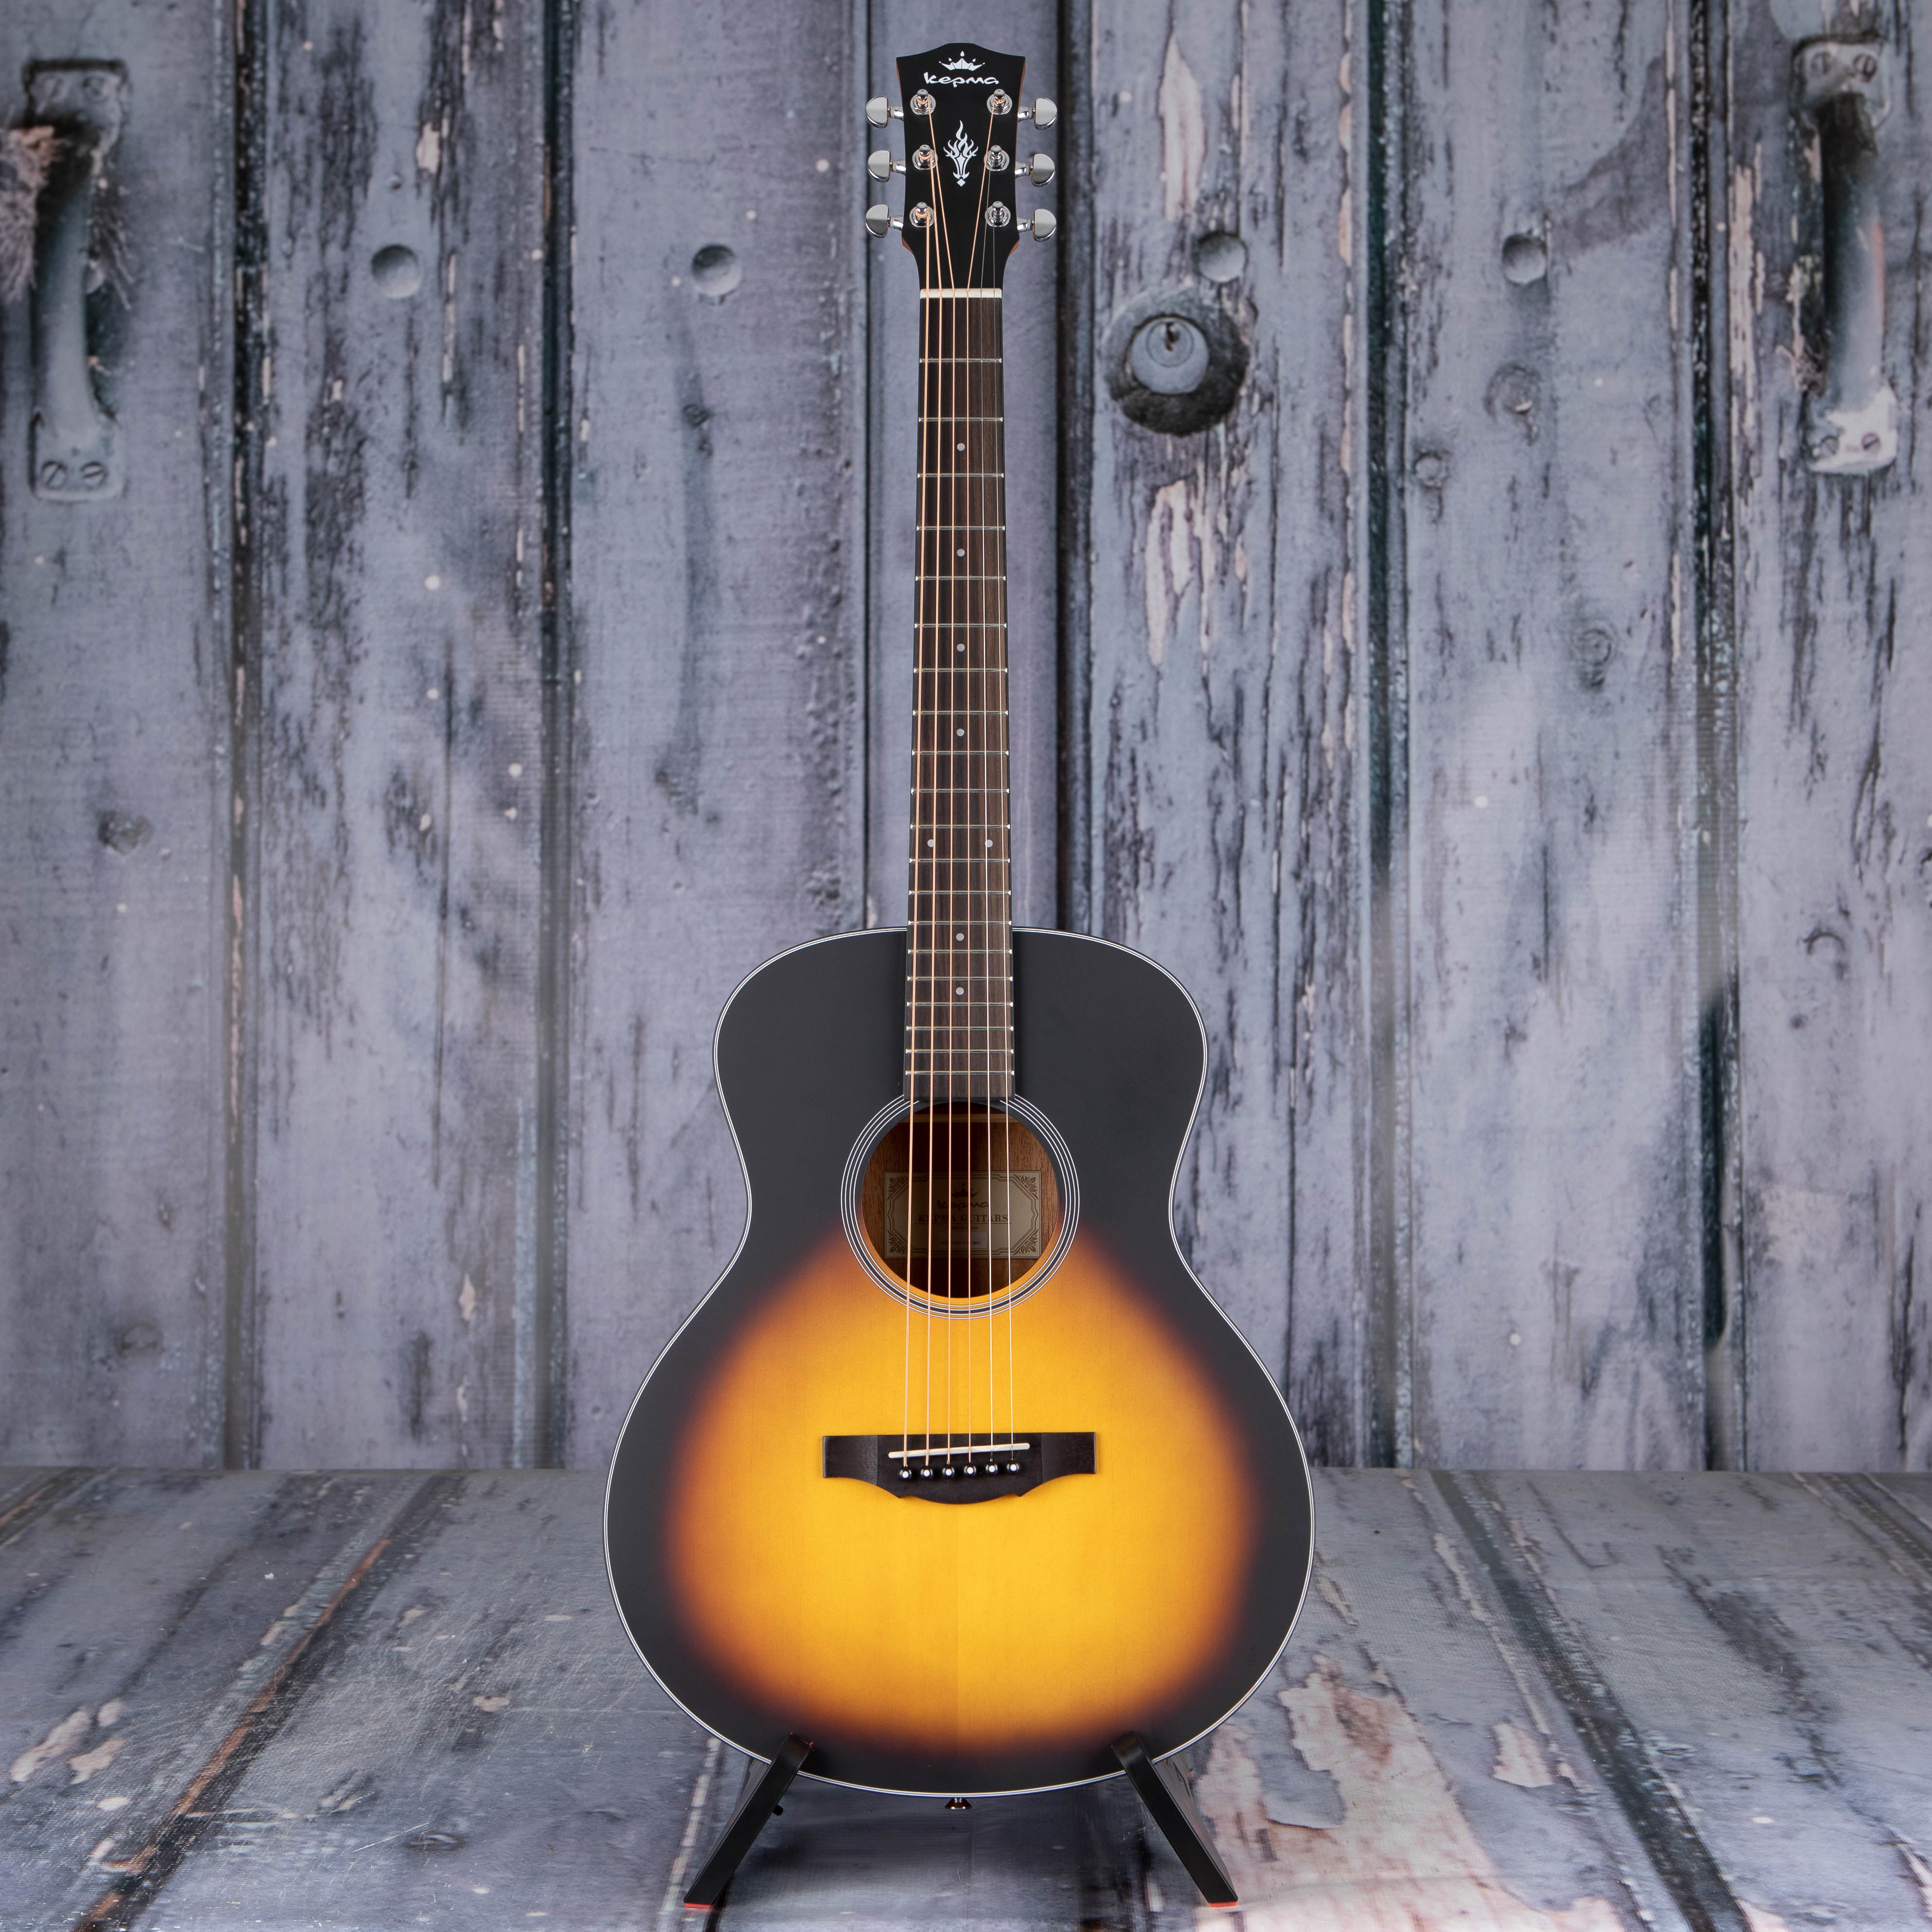 Kepma K3 Series M3-130 Mini 36" Model Acoustic Guitar, Sunburst, front